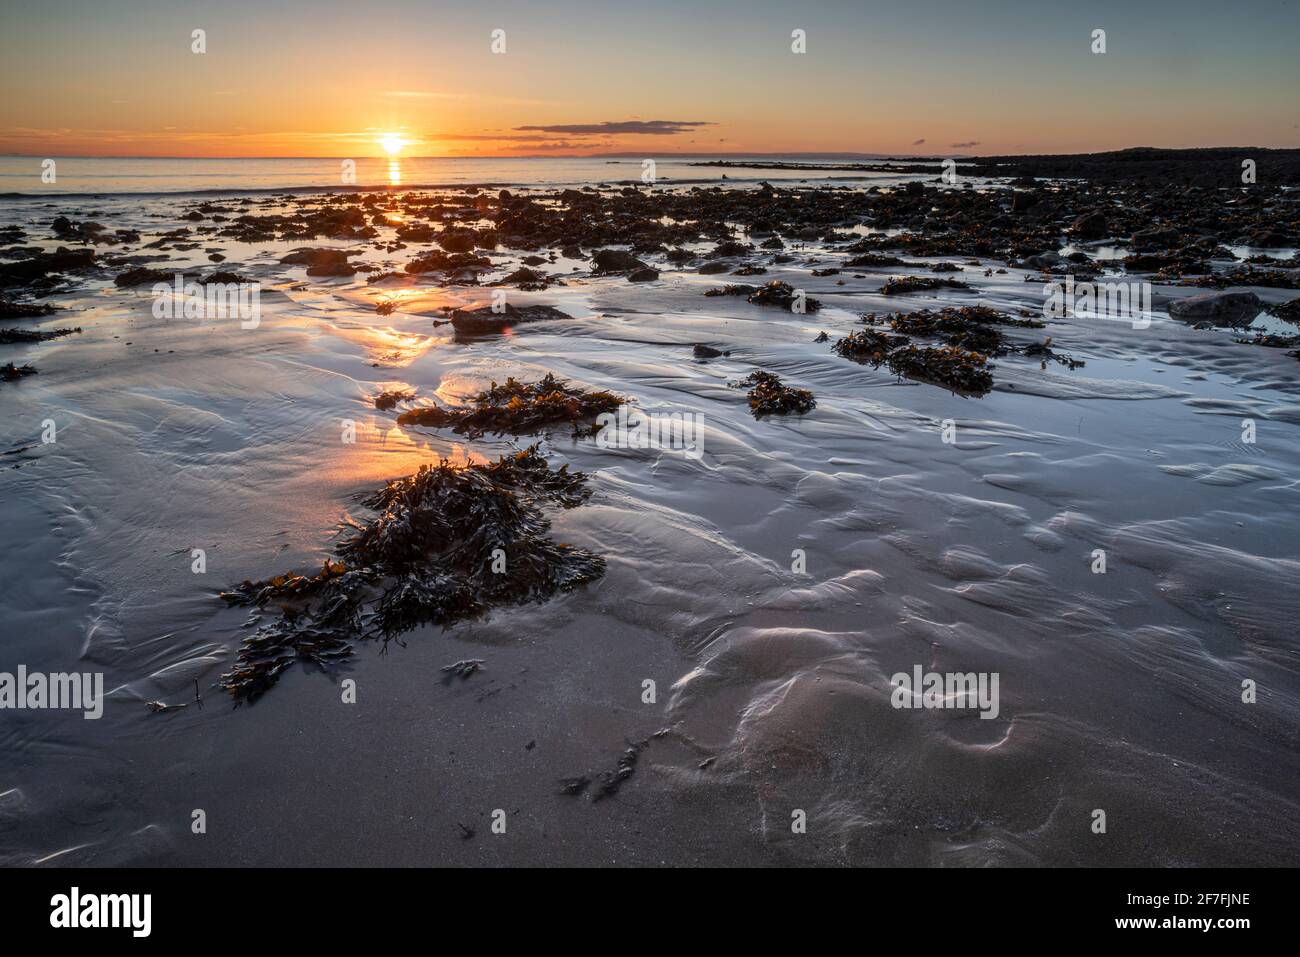 Piscine e rocce a bassa marea, alba, Port Eynon Bay, Penisola di Gower, Swansea, Galles, Regno Unito, Europa Foto Stock